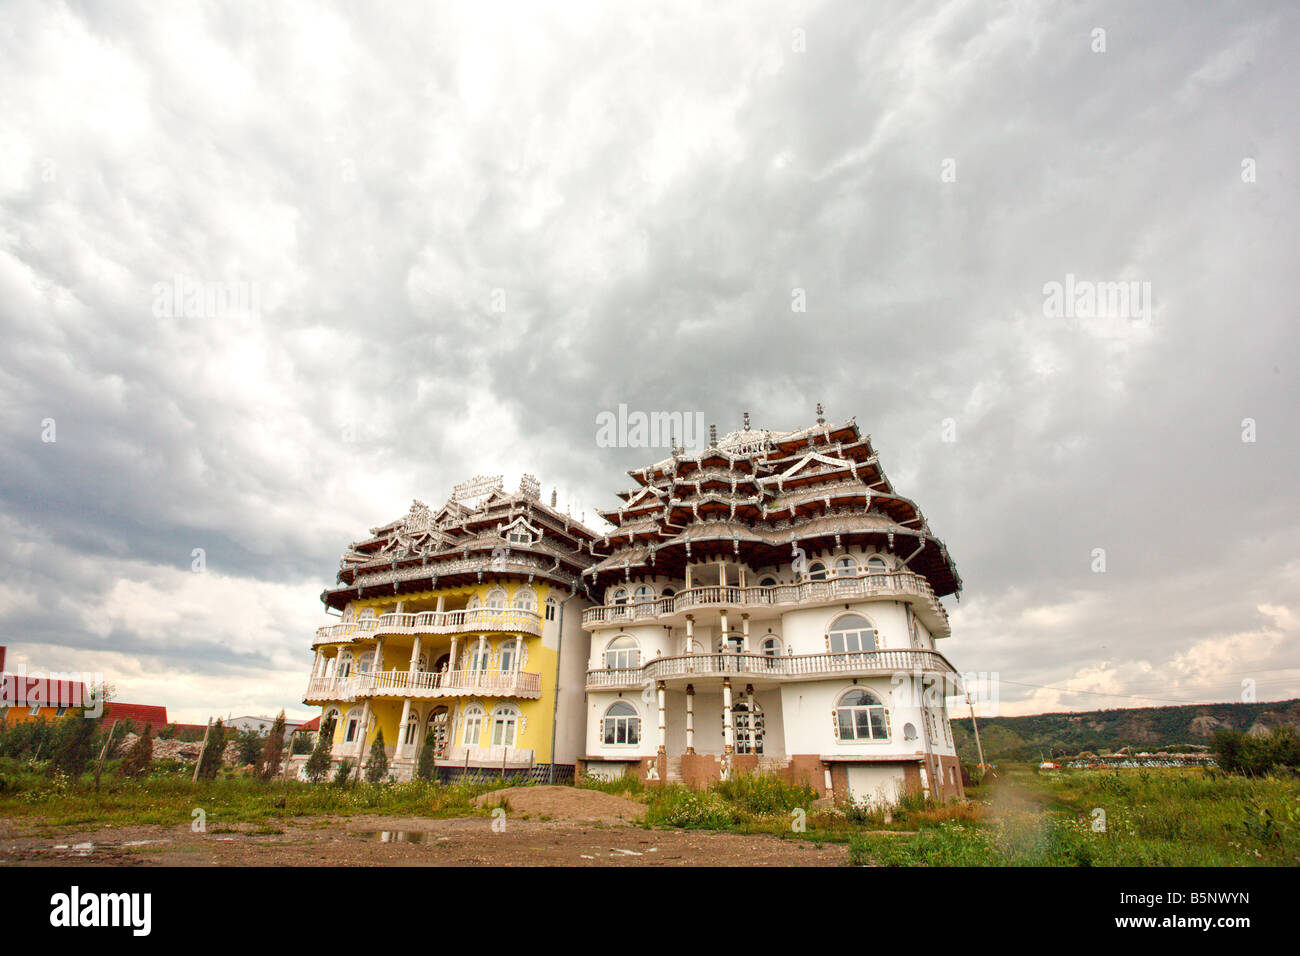 rich gypsy house near baia mare, transylvania, romania Stock Photo